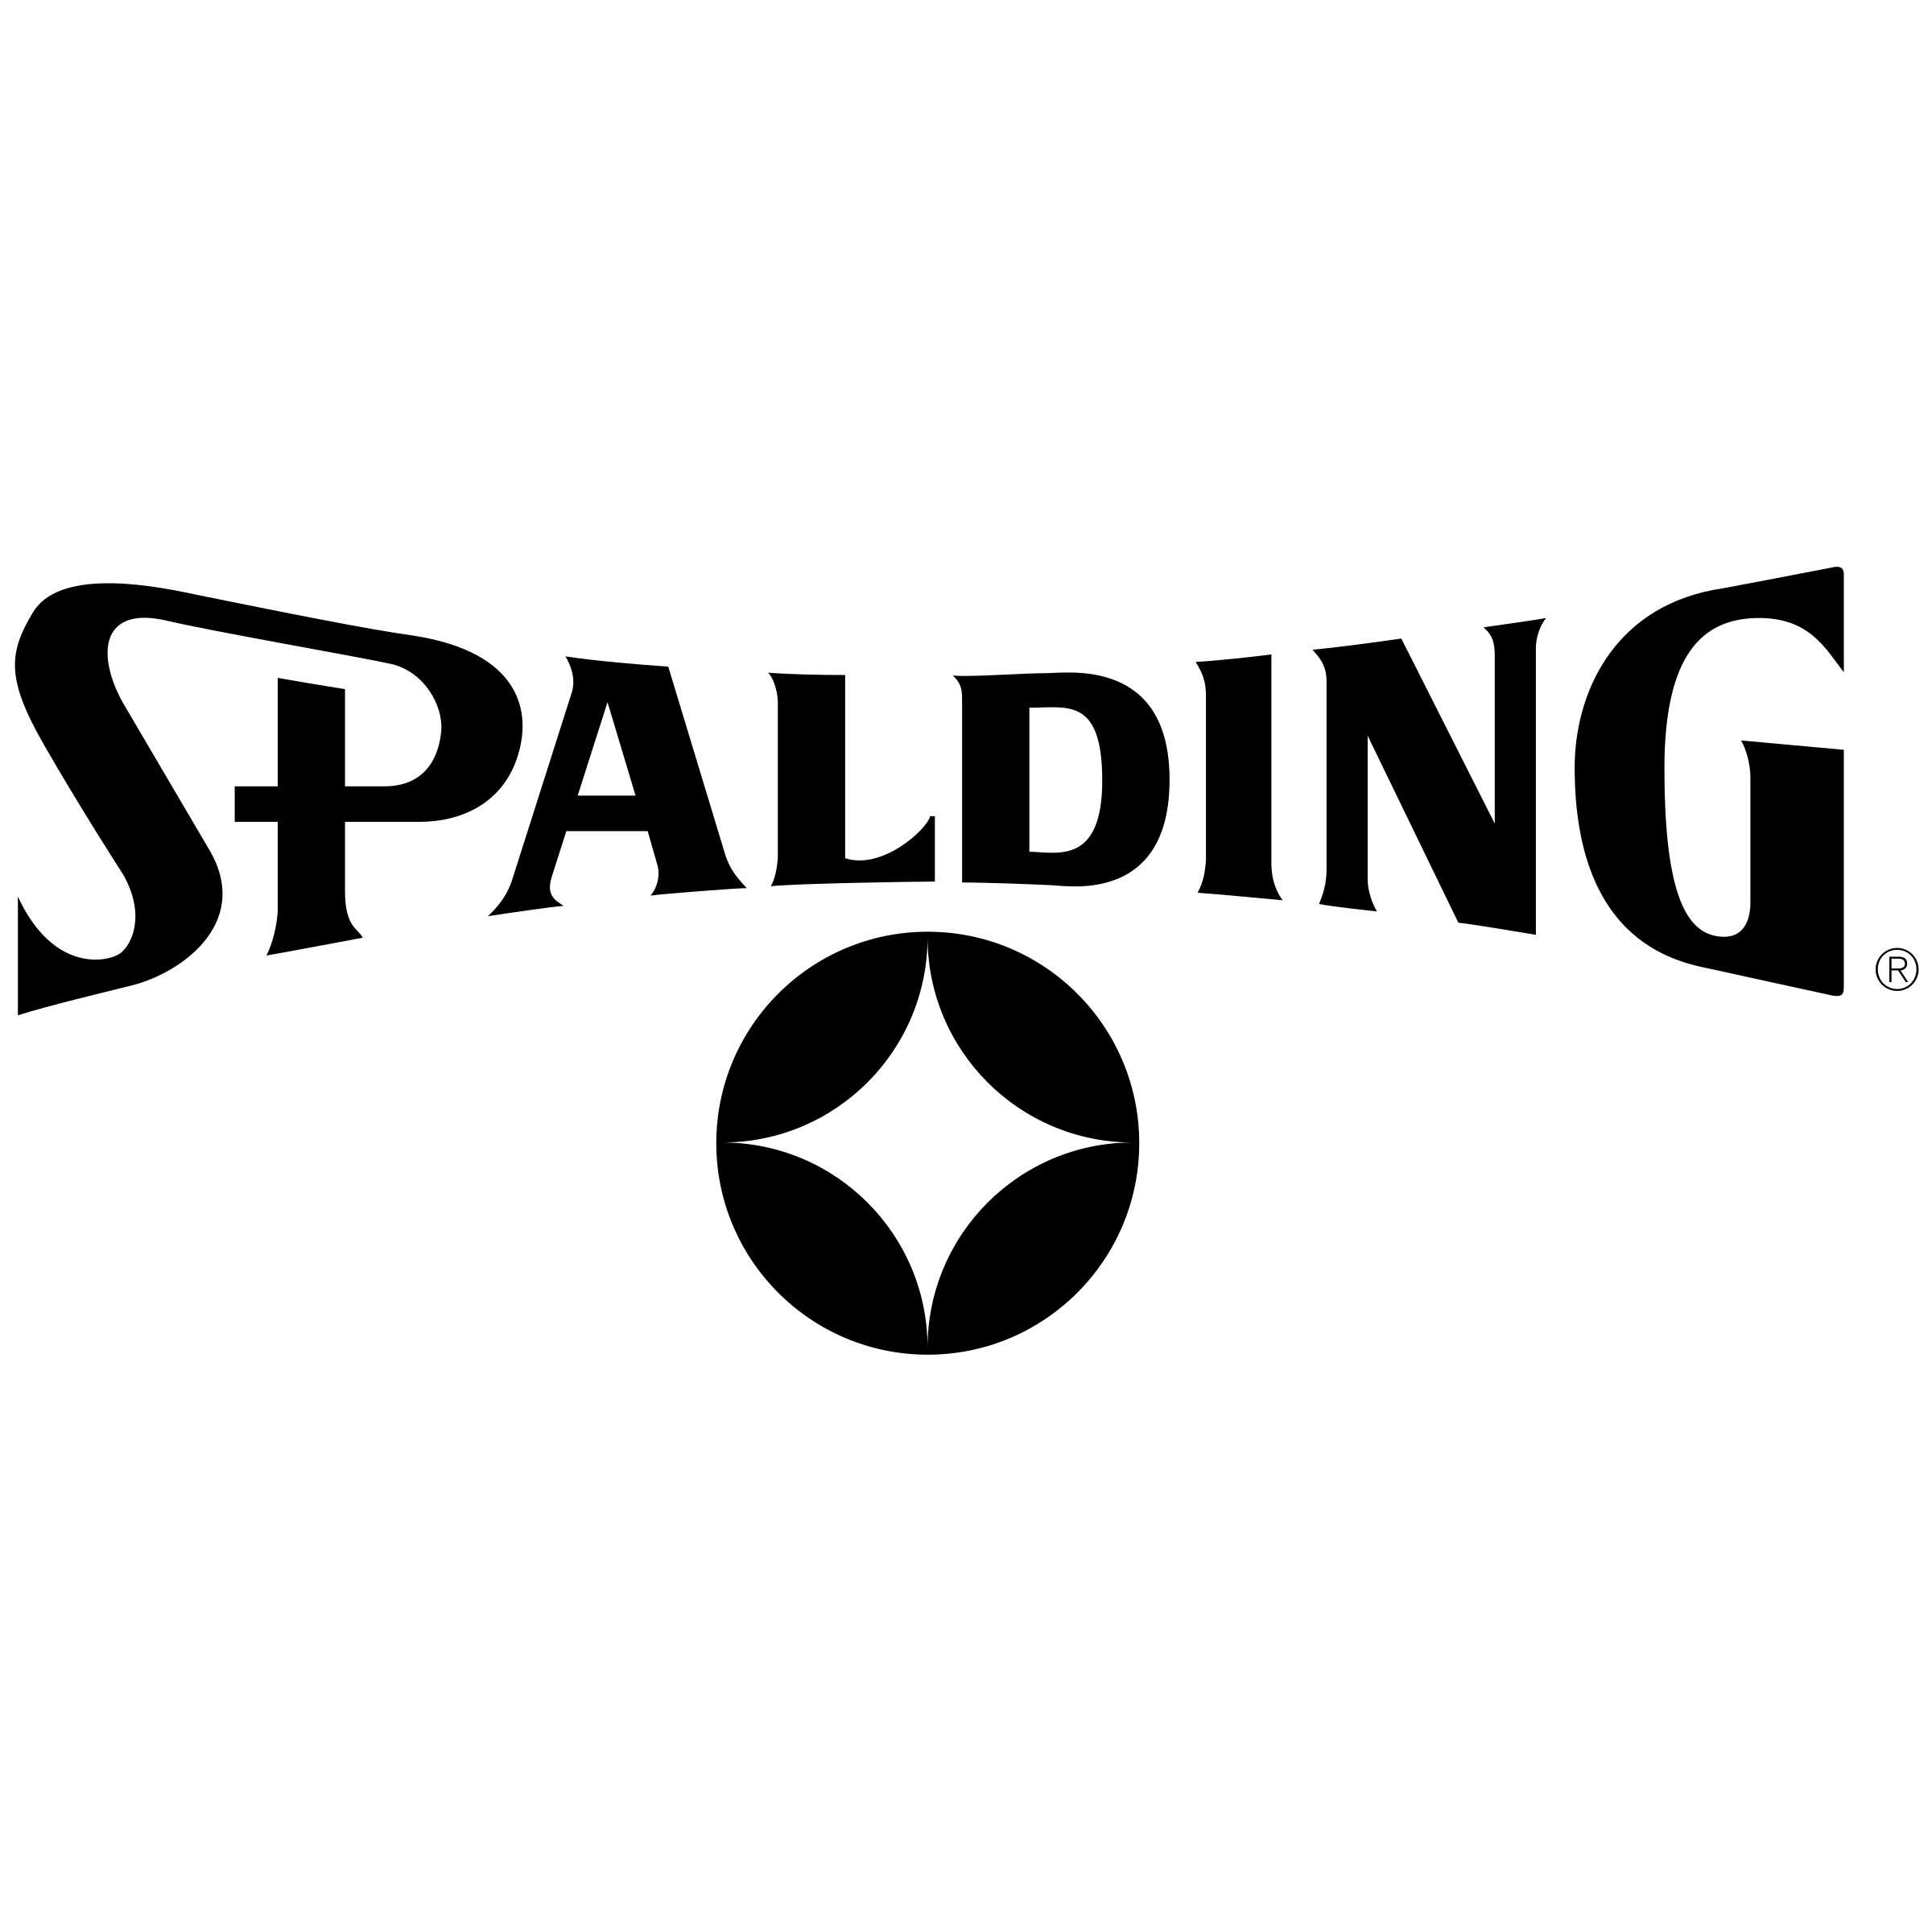 Spaulding Logo - Spalding Logo PNG Transparent & SVG Vector